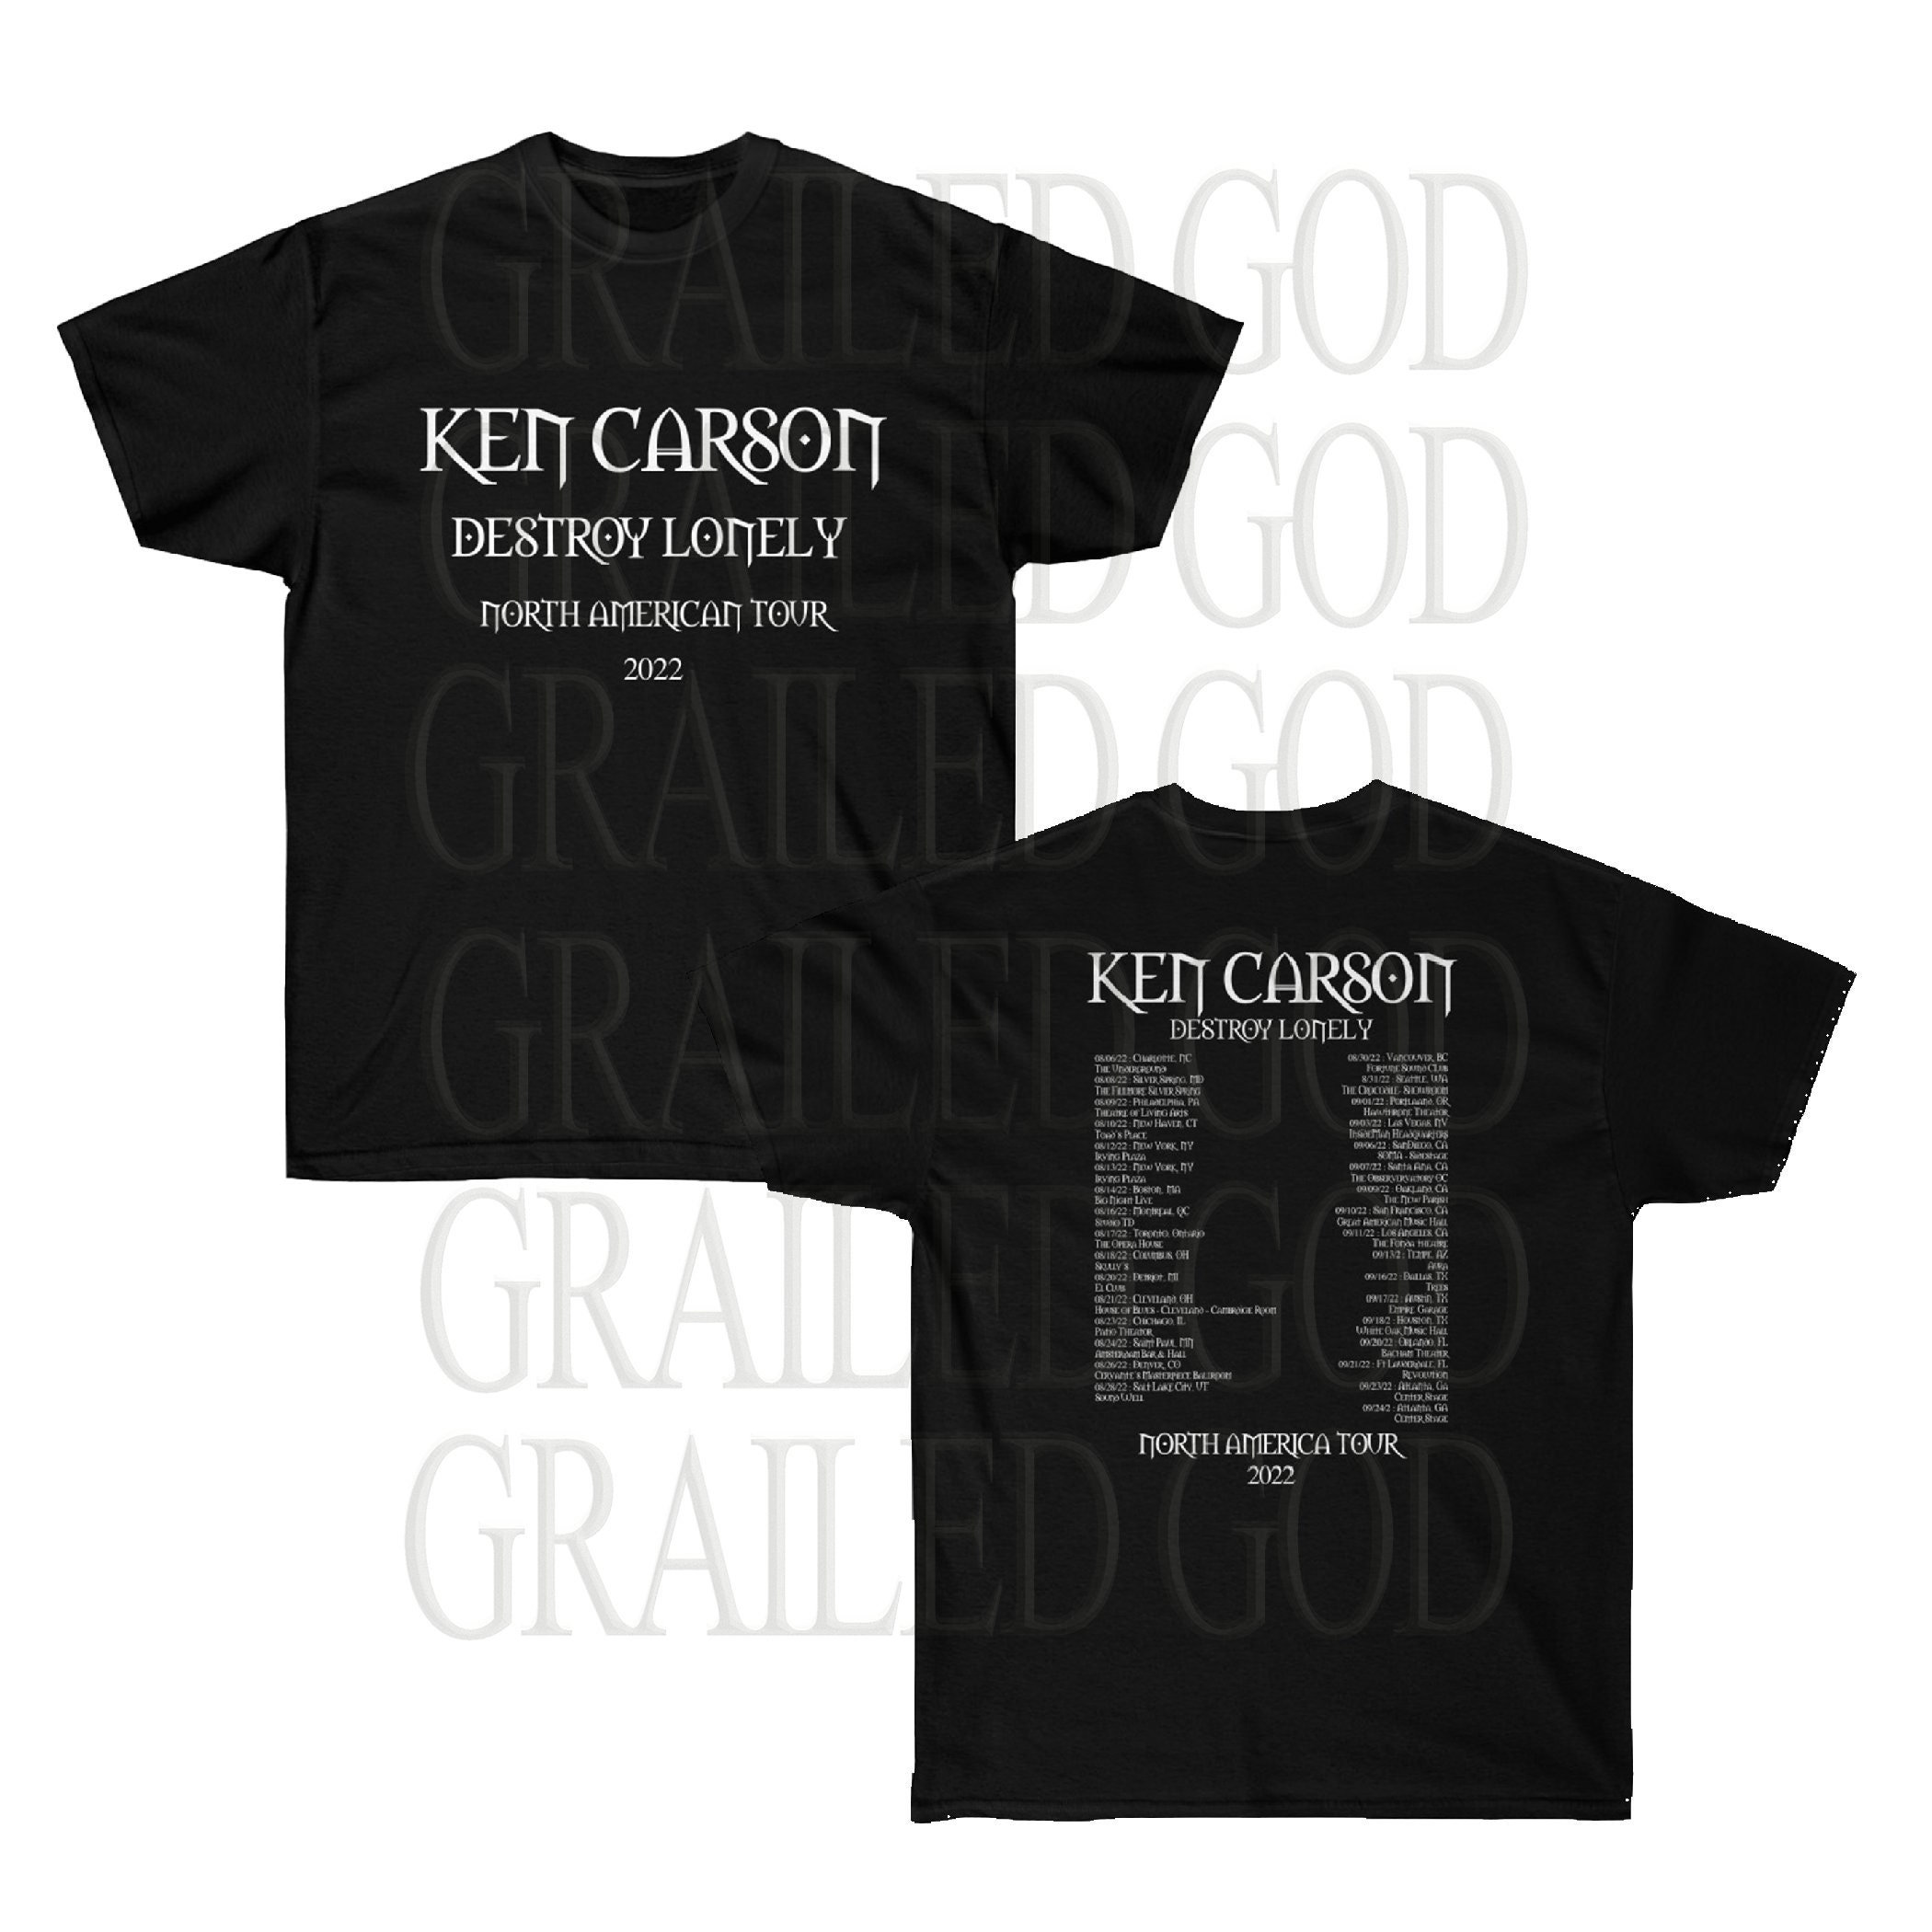 Ken Carson x Destroy Lonely X Man Tour 2022 Shirt black - Etsy 日本